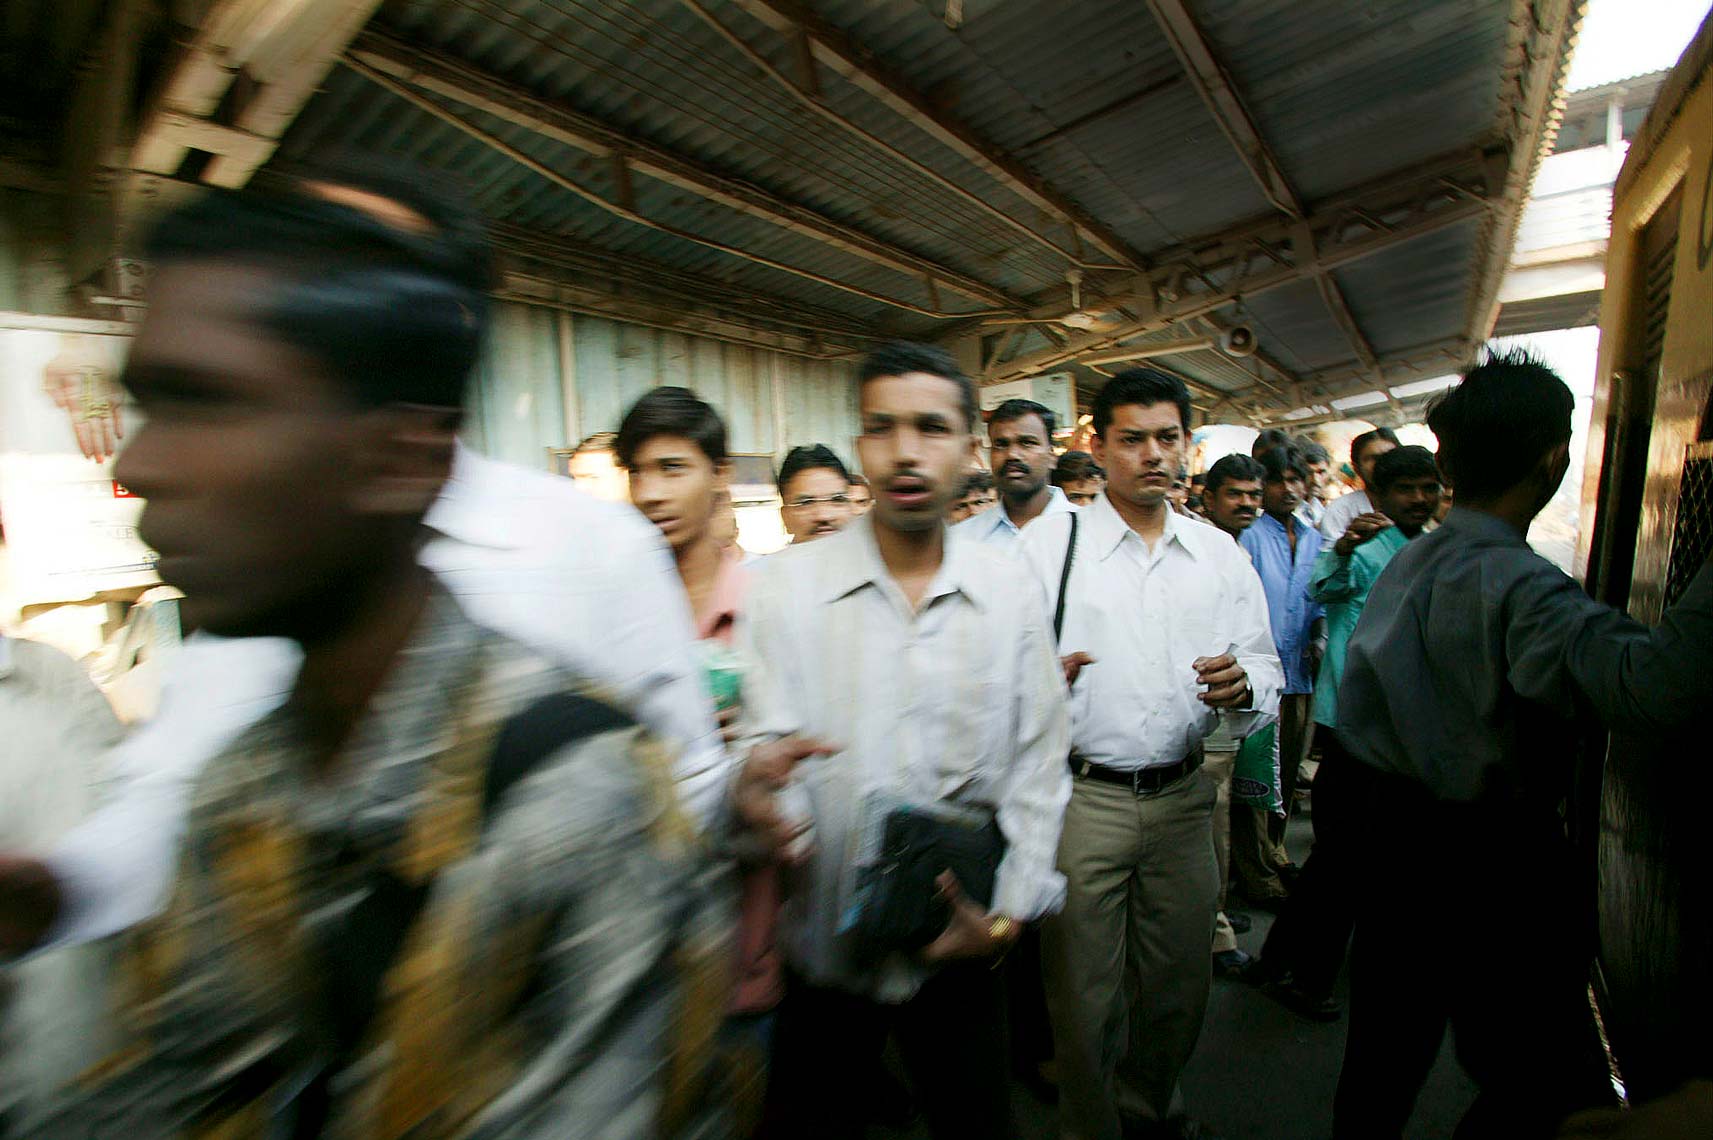 mumbai_trains1508.jpg